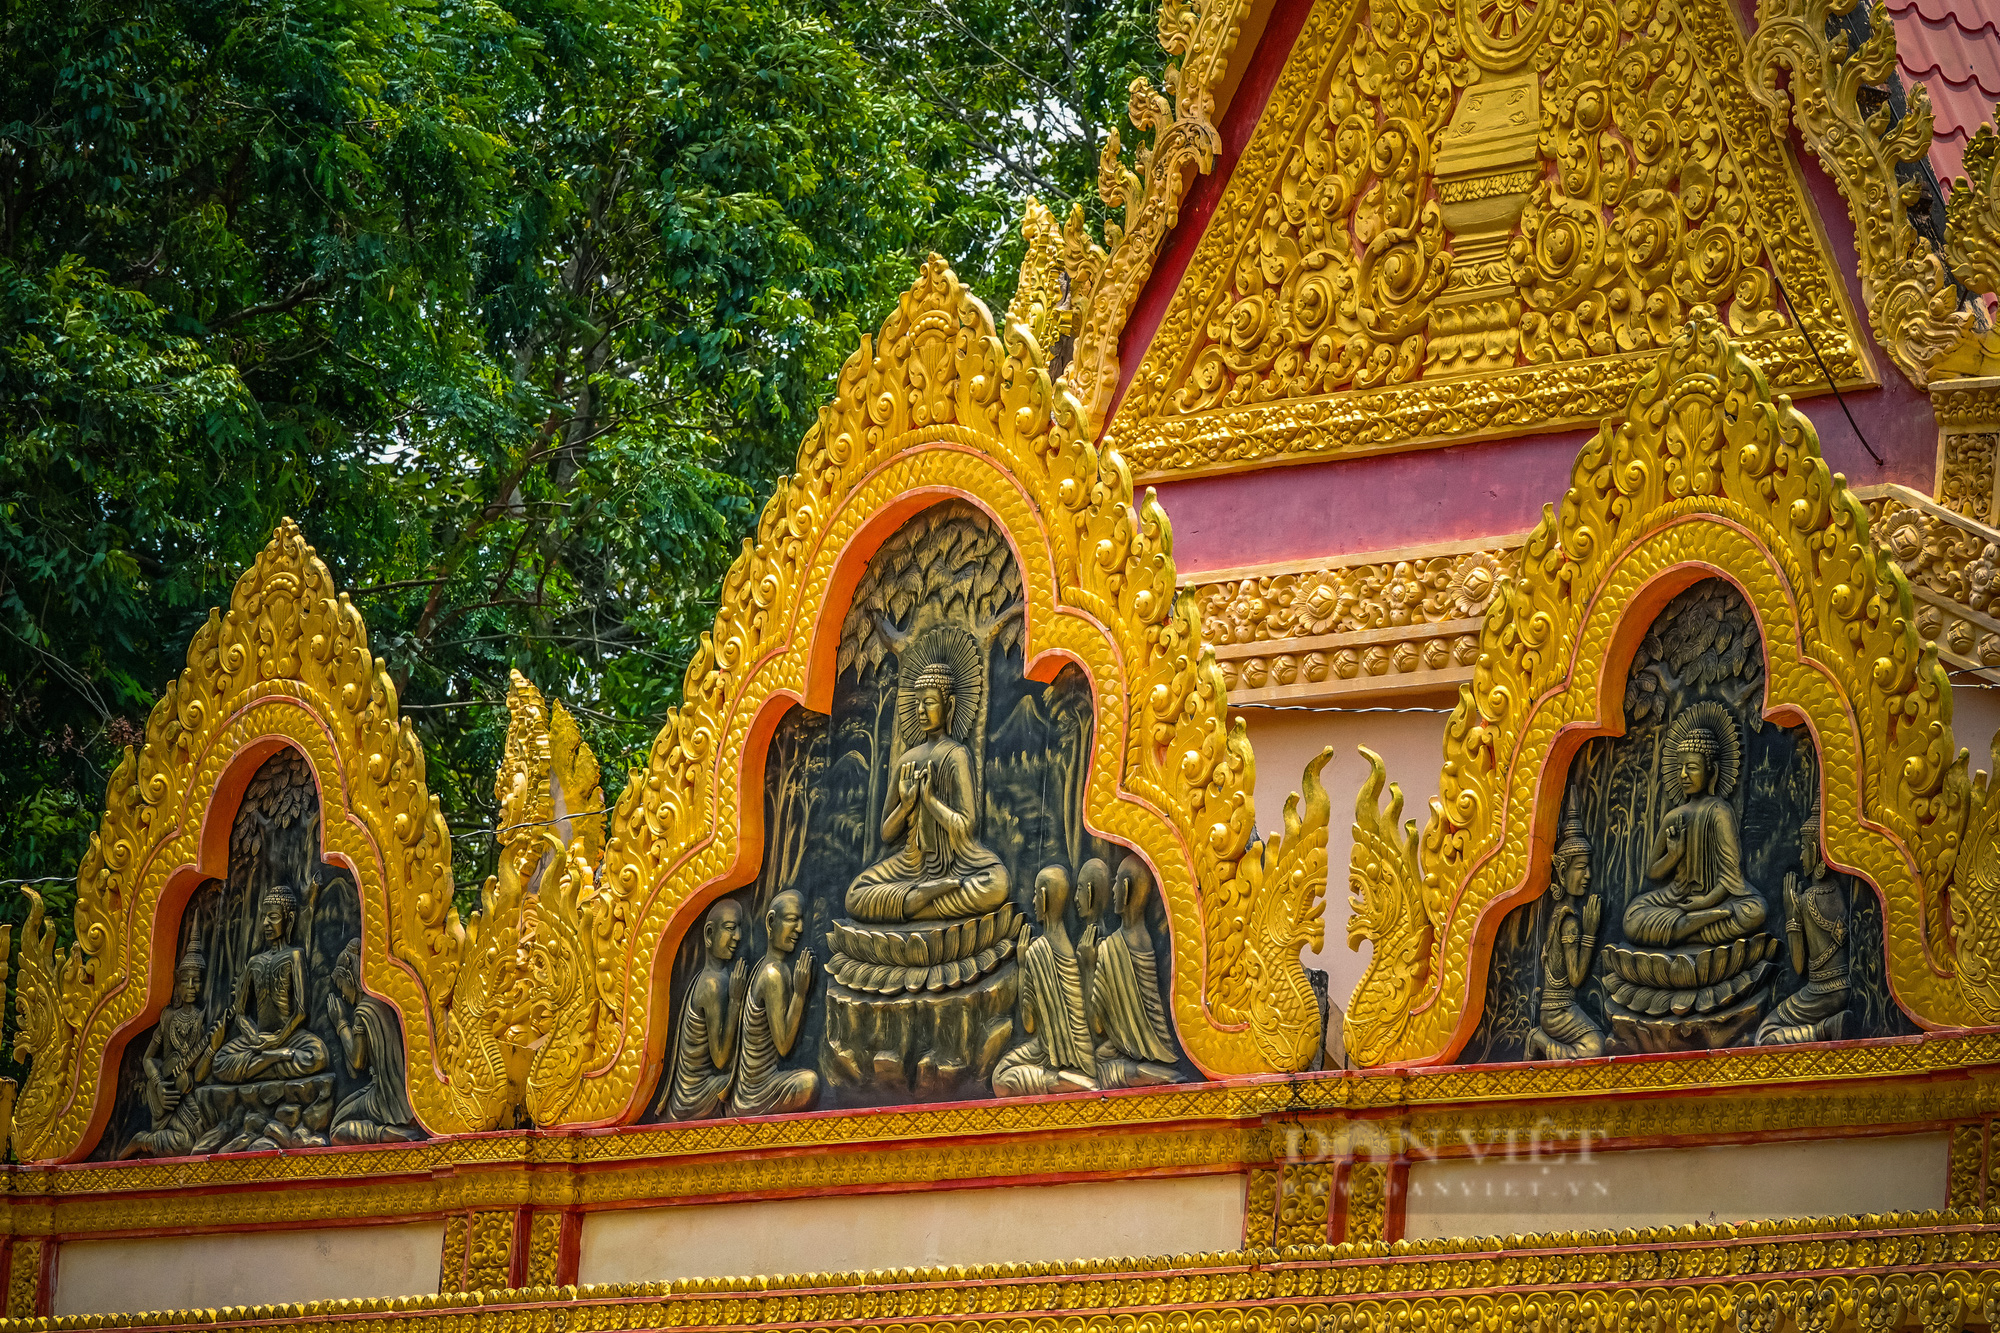 Ngôi chùa Khmer trăm năm tuổi với hàng trăm cây sao cổ thụ “độc” nhất Sóc Trăng - Ảnh 3.